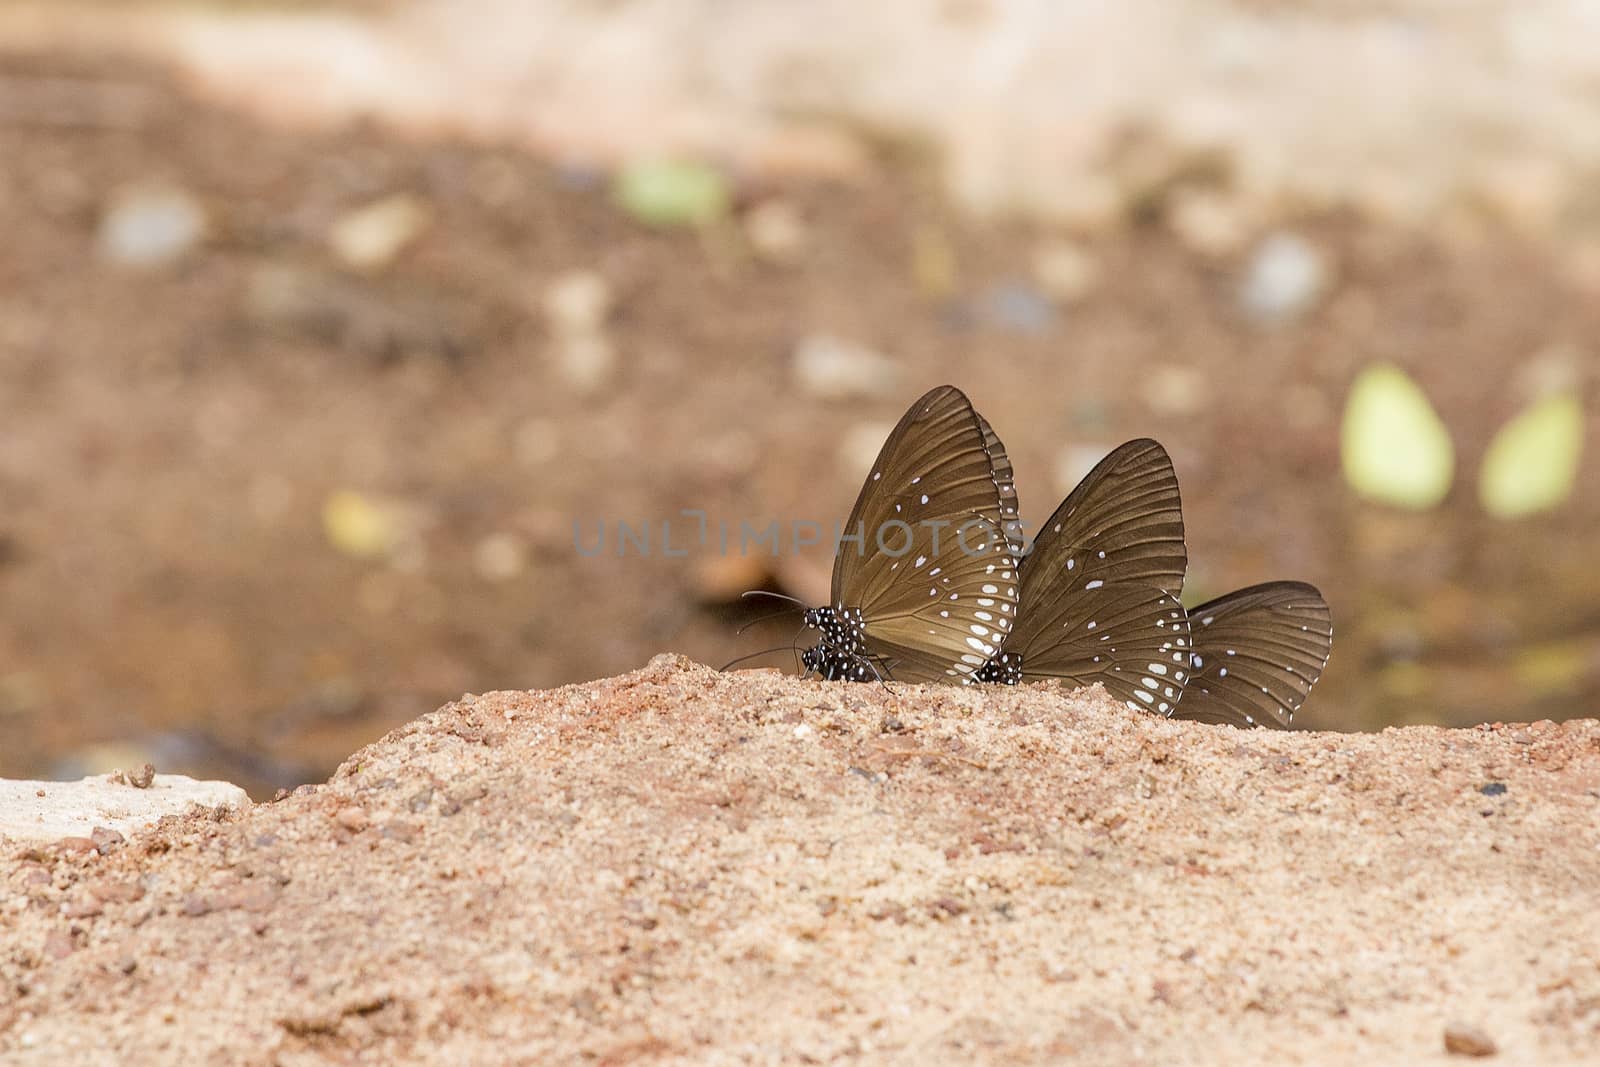  A pretty butterfly on a sandy soil background by TakerWalker